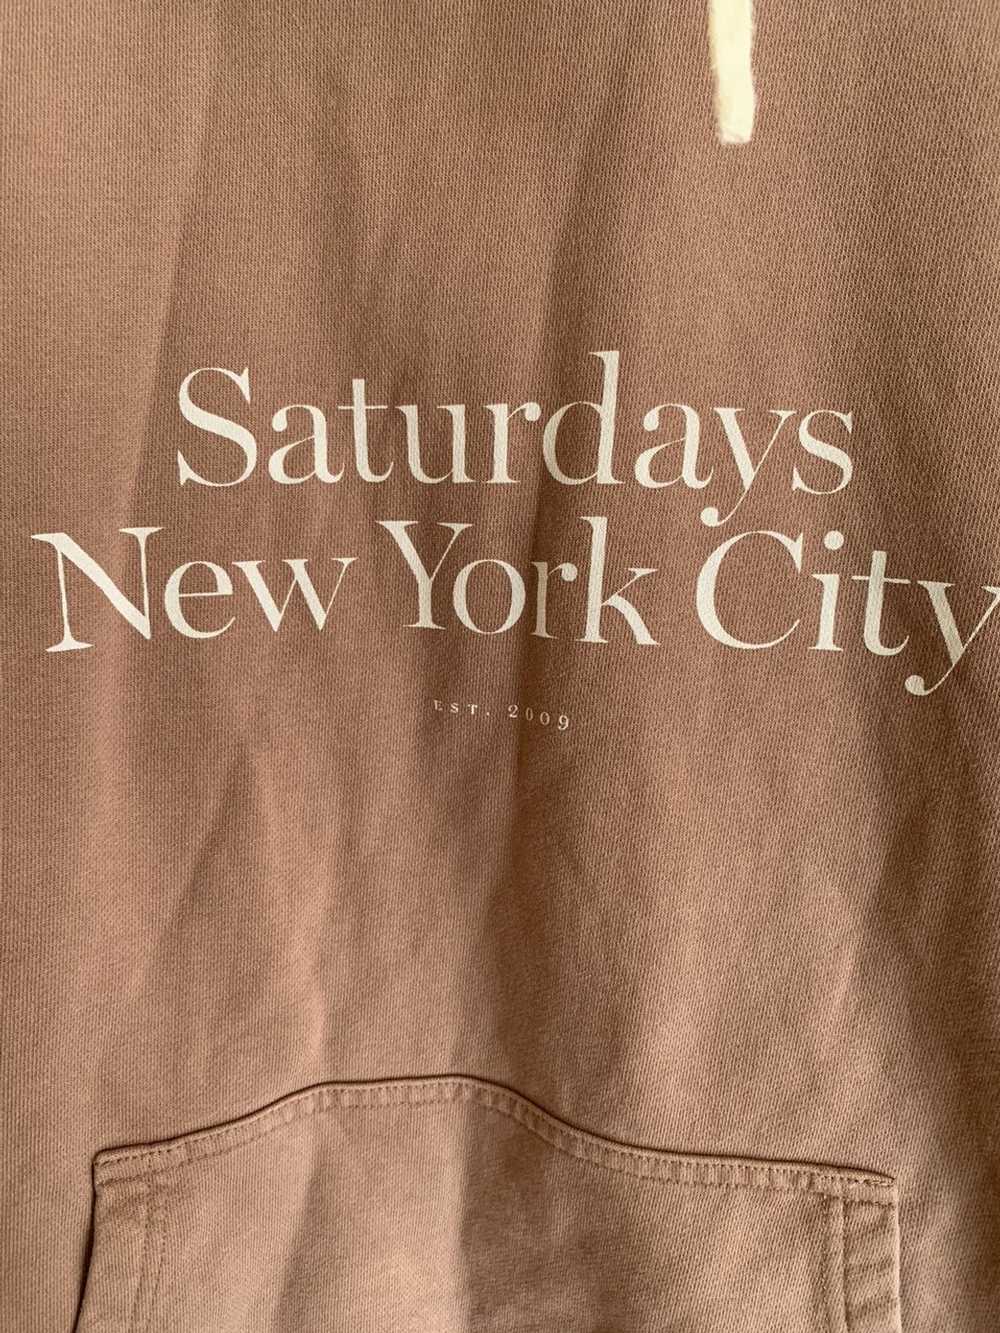 Saturdays New York City Saturdays Logo Hoodie - image 2